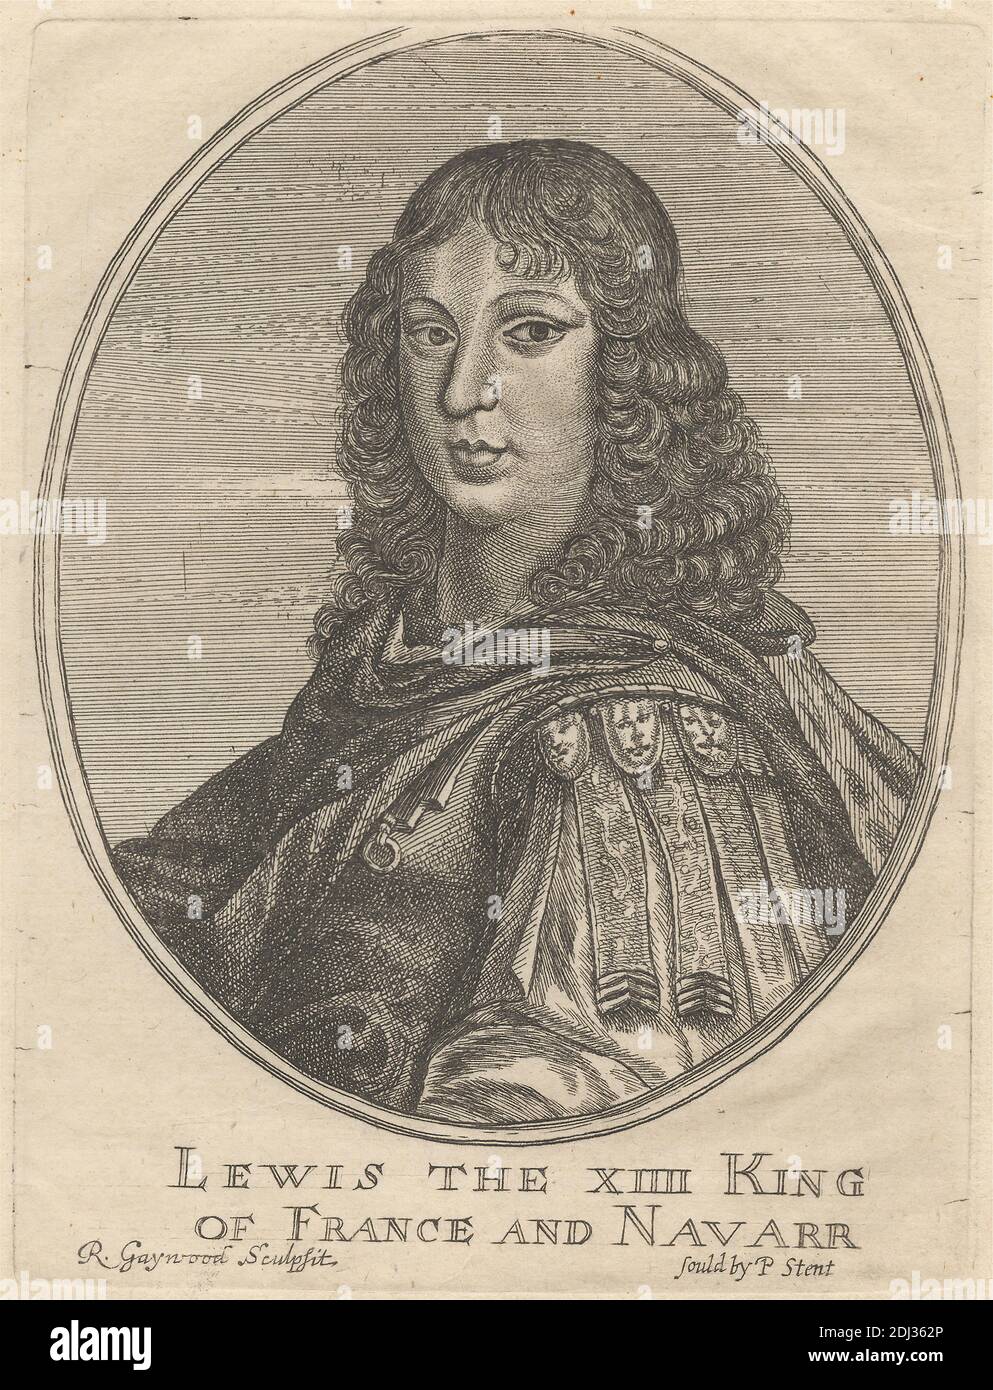 Portrait of Louis XIV, King of France and Navarre, Richard Gaywood, Active 1650–1680, Published by Peter Stent, Active 1642–1665, British, undated, Radierung und Stipple Engravierung auf mäßig dickem, leicht strukturiertem, cremefarbenen Papier, Blatt: 10 15/16 x 6 7/8 Zoll (27.8 x 17.4 cm), Platte: 6 x 4 1/2 Zoll (15.2 x 11.4 cm), und Bild: 5 1/4 x 4 5/16 Zoll (13.3 x 11 cm), Rüstung, Locken, halblange Figuren, König (Person), Lackkragen, Mantel, Medaillons, Edelmann, oval, Porträt, Posen, Regal Stockfoto